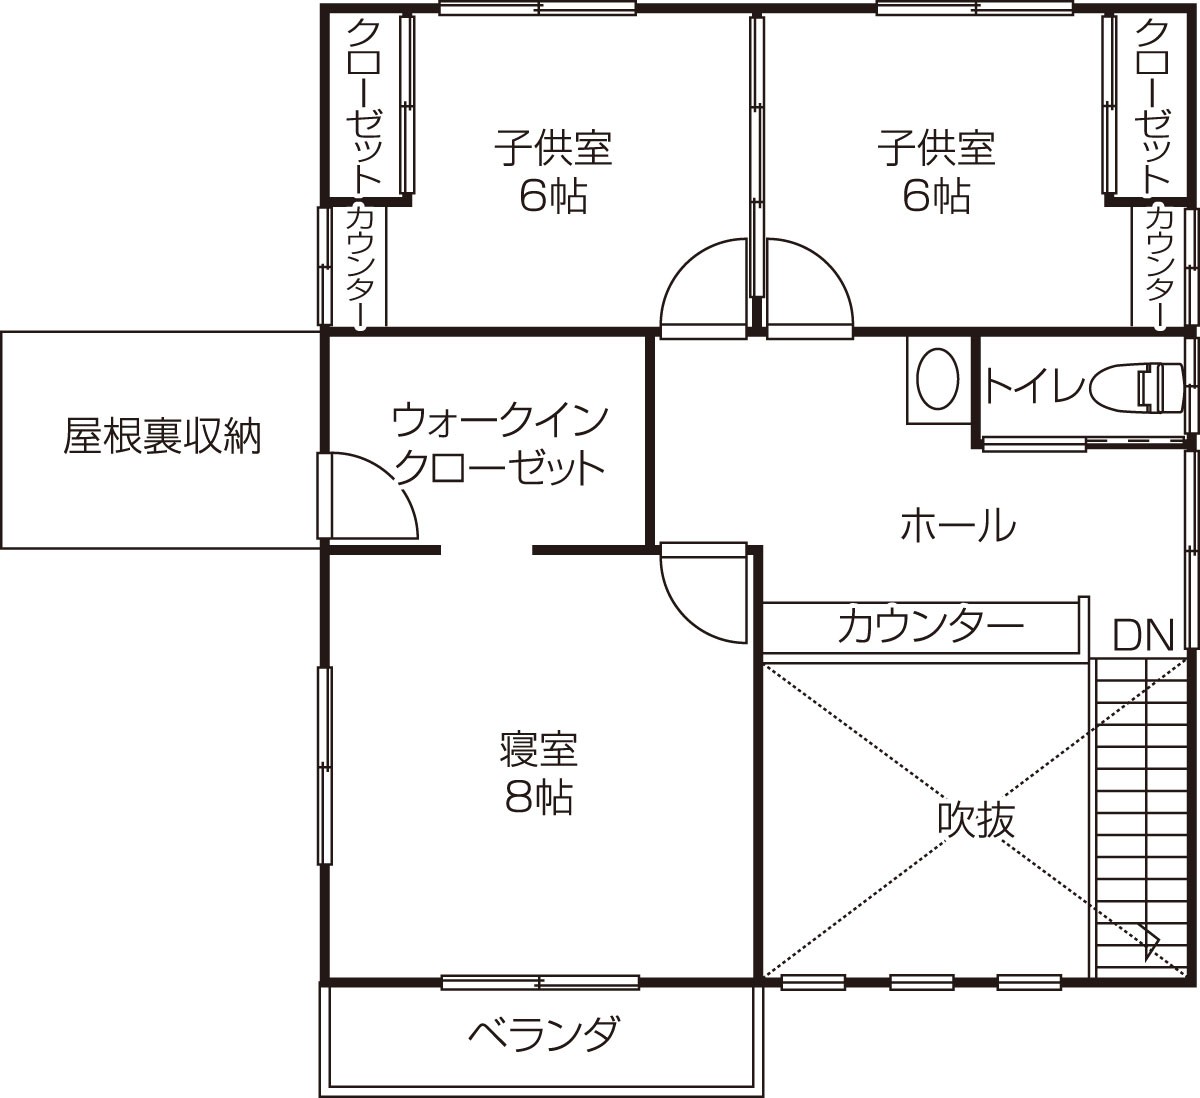 鳥取県西伯郡のおすすめ工務店「藤原建築工務店」による新築事例の2階間取り図